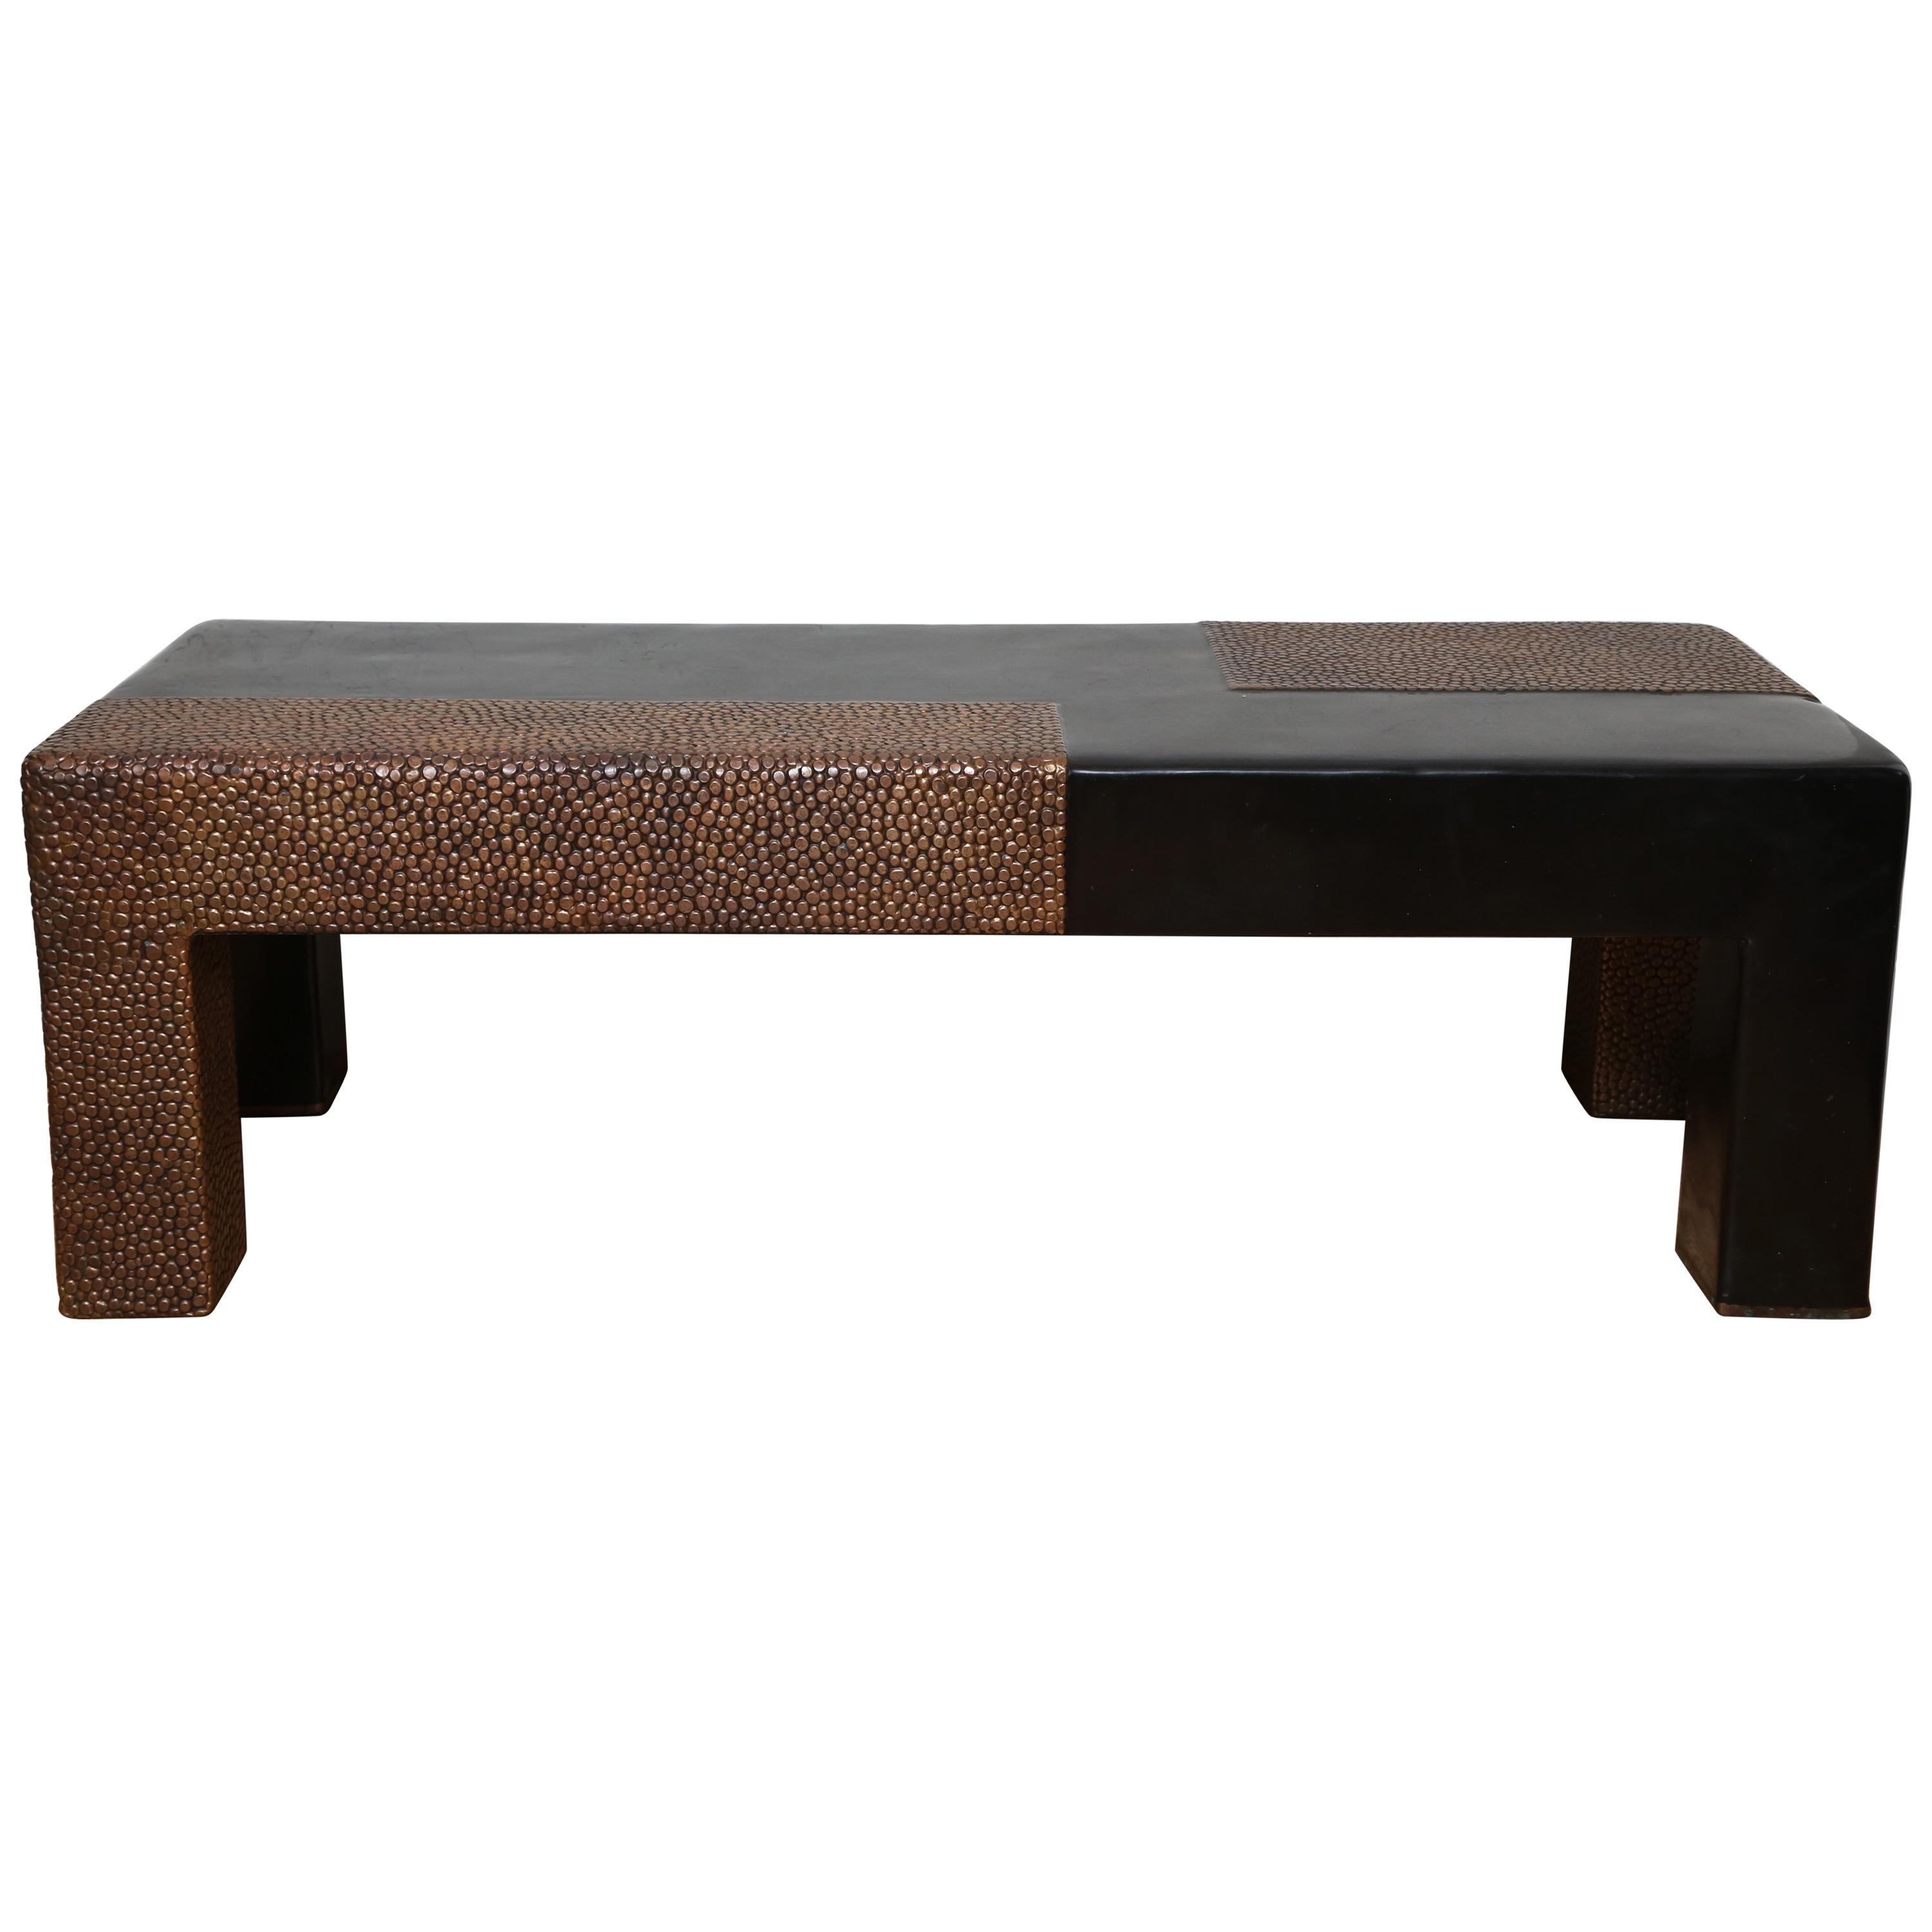 Schwarzer Repousse-Tisch oder Bank aus schwarzem Lack und Kupfer von Robert Kuo